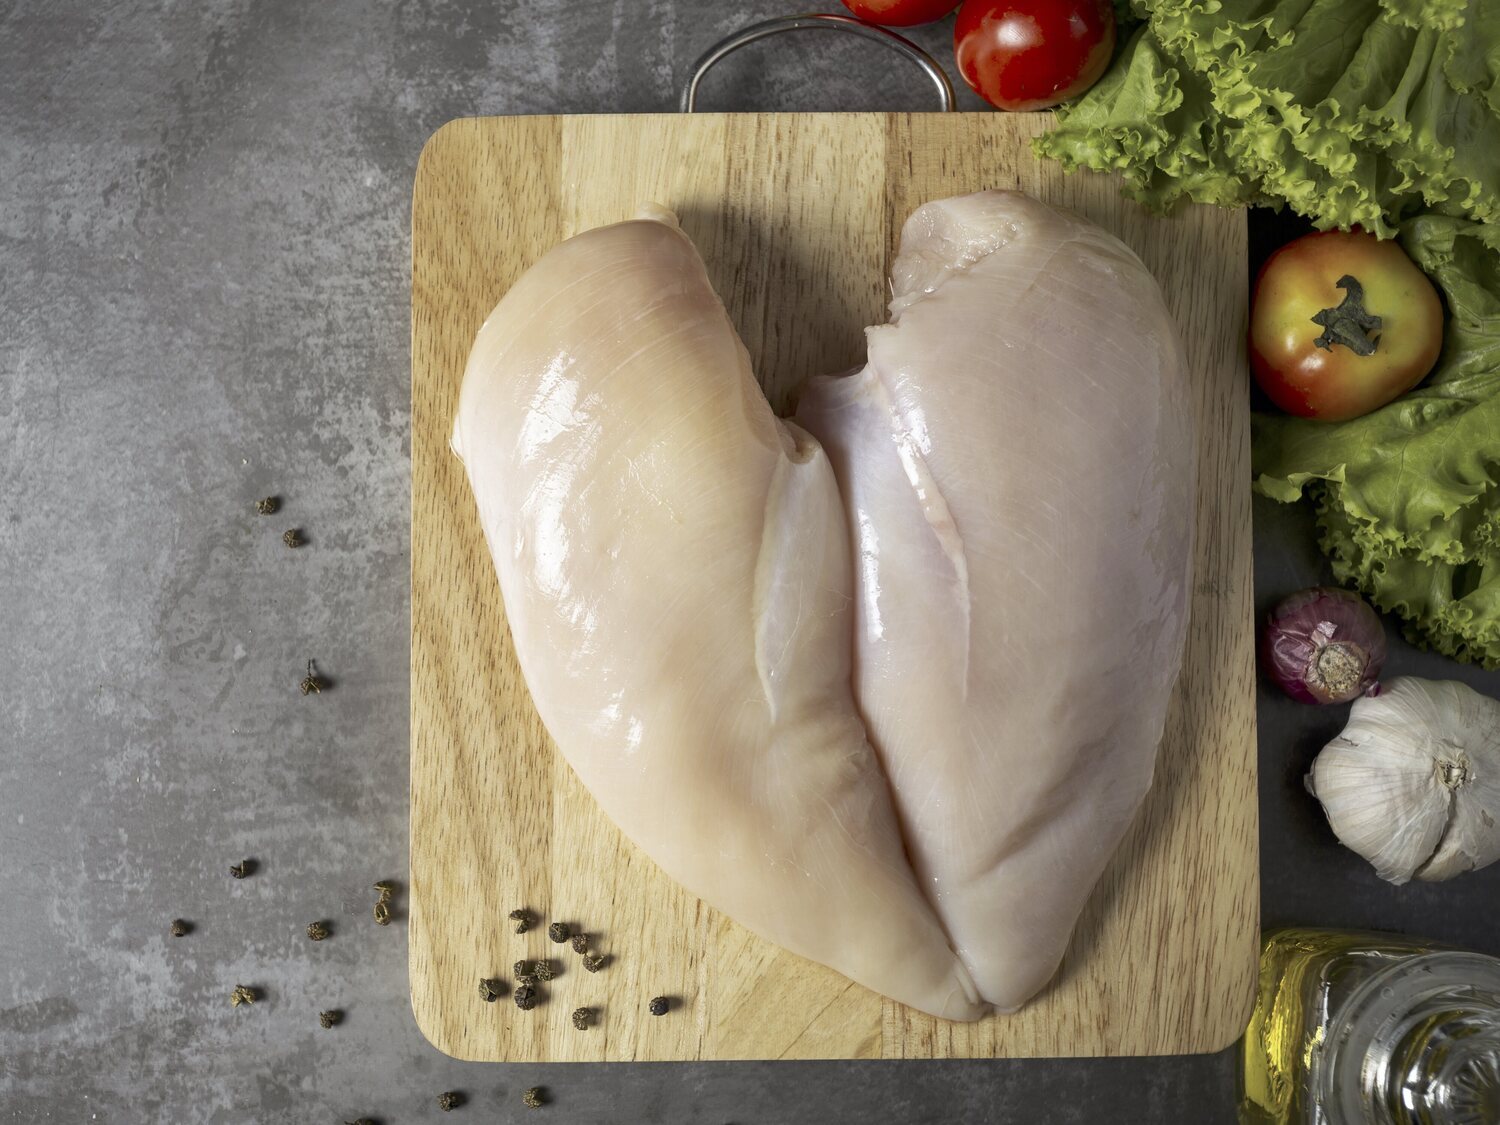 Alerta alimentaria: retiran de la venta estas populares pechugas de pollo del supermercado